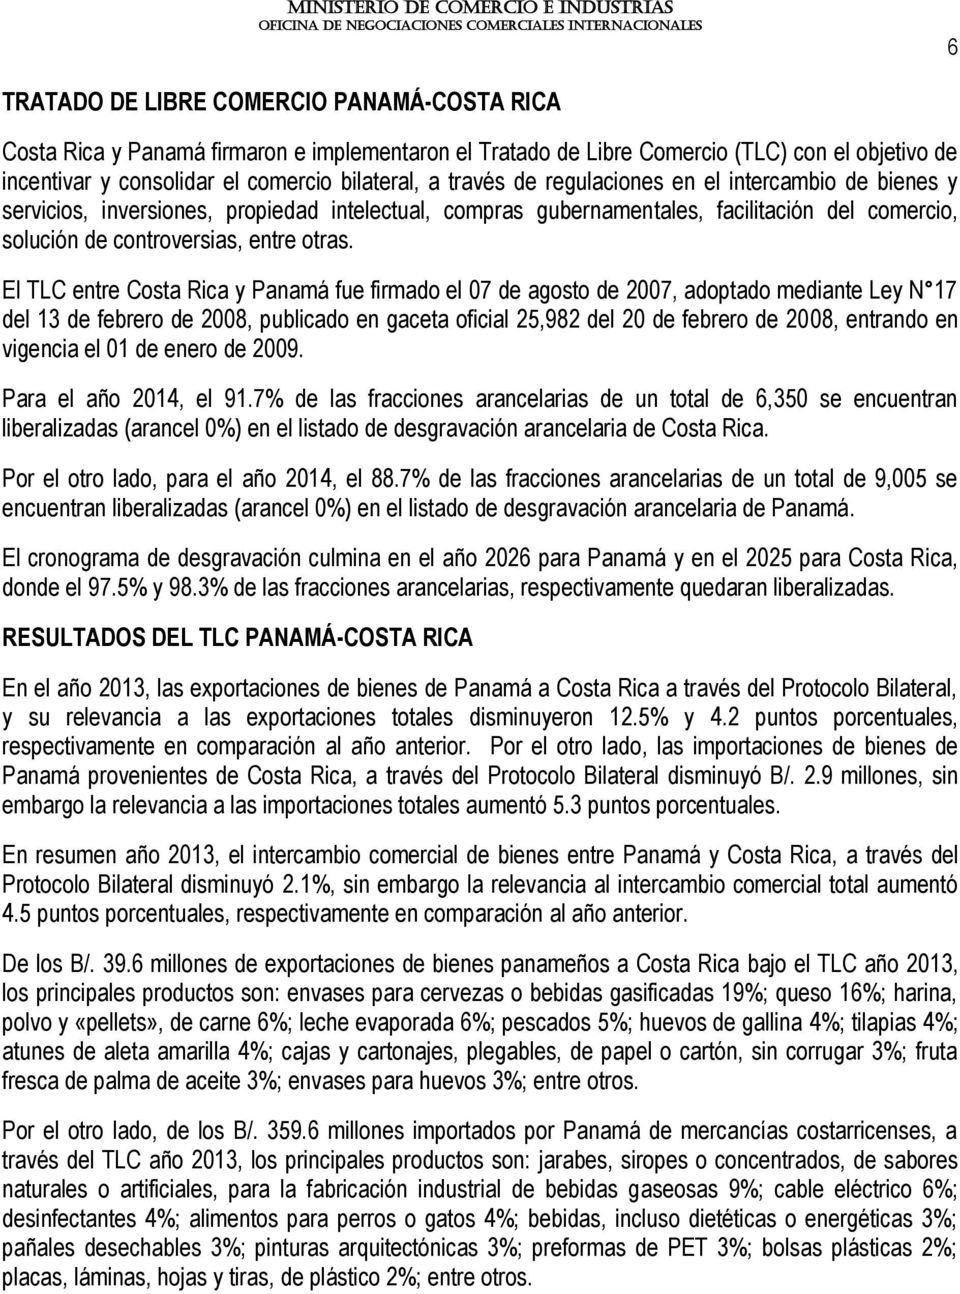 El TLC entre Costa Rica y Panamá fue firmado el 07 de agosto de 2007, adoptado mediante Ley N 17 del 13 de febrero de 2008, publicado en gaceta oficial 25,982 del 20 de febrero de 2008, entrando en